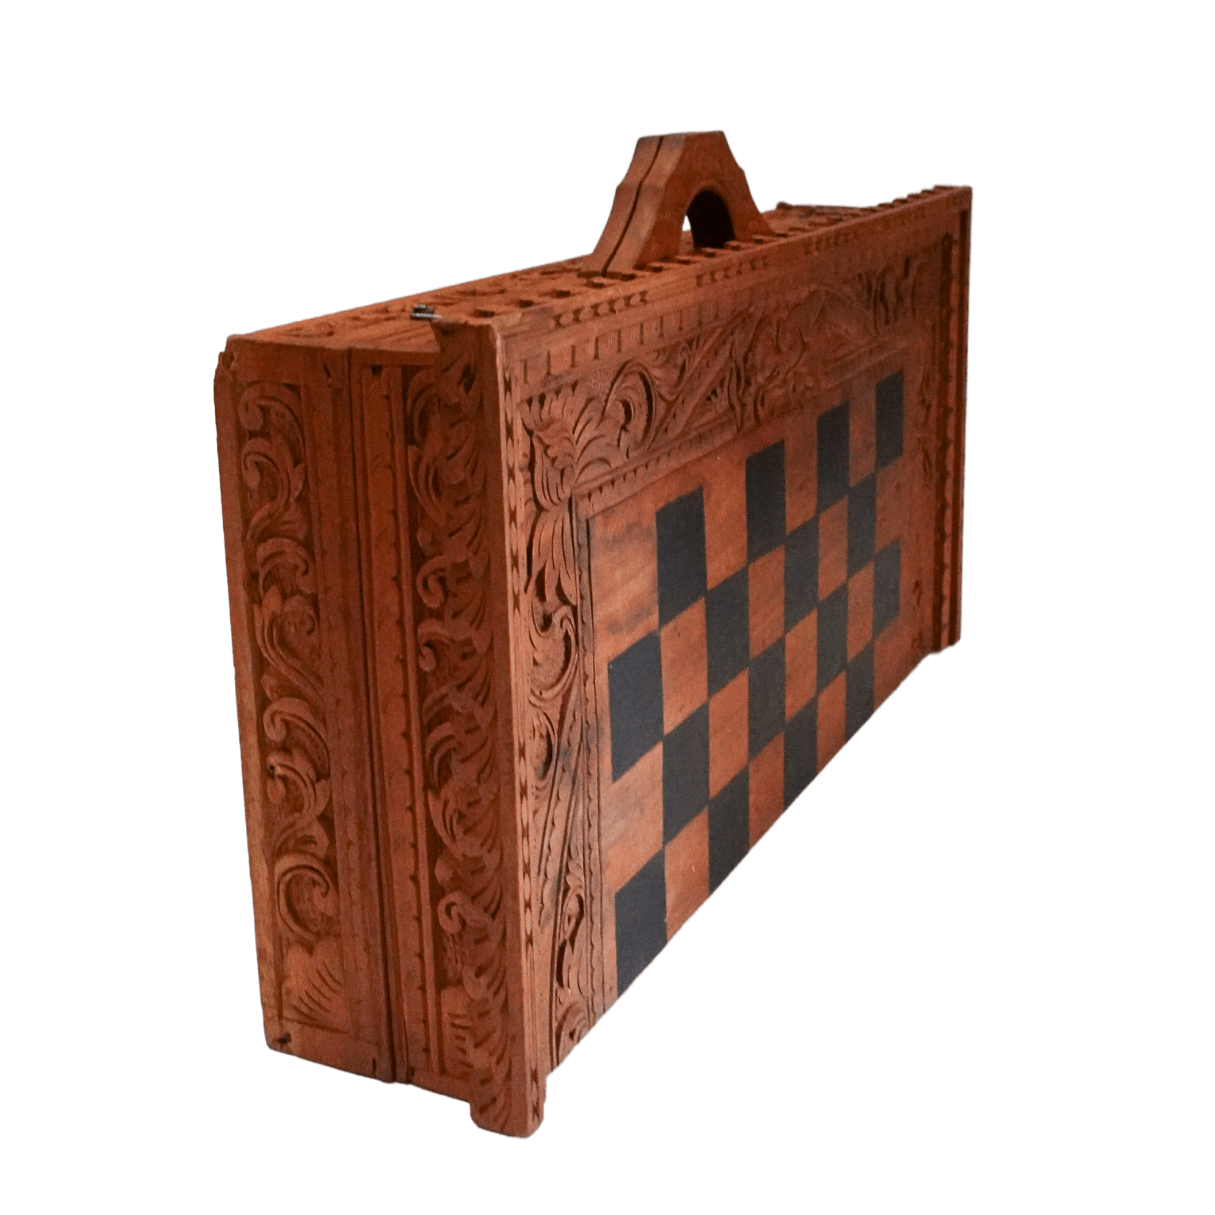 Antigo jogo de xadrez, provável origem oriental, em cai